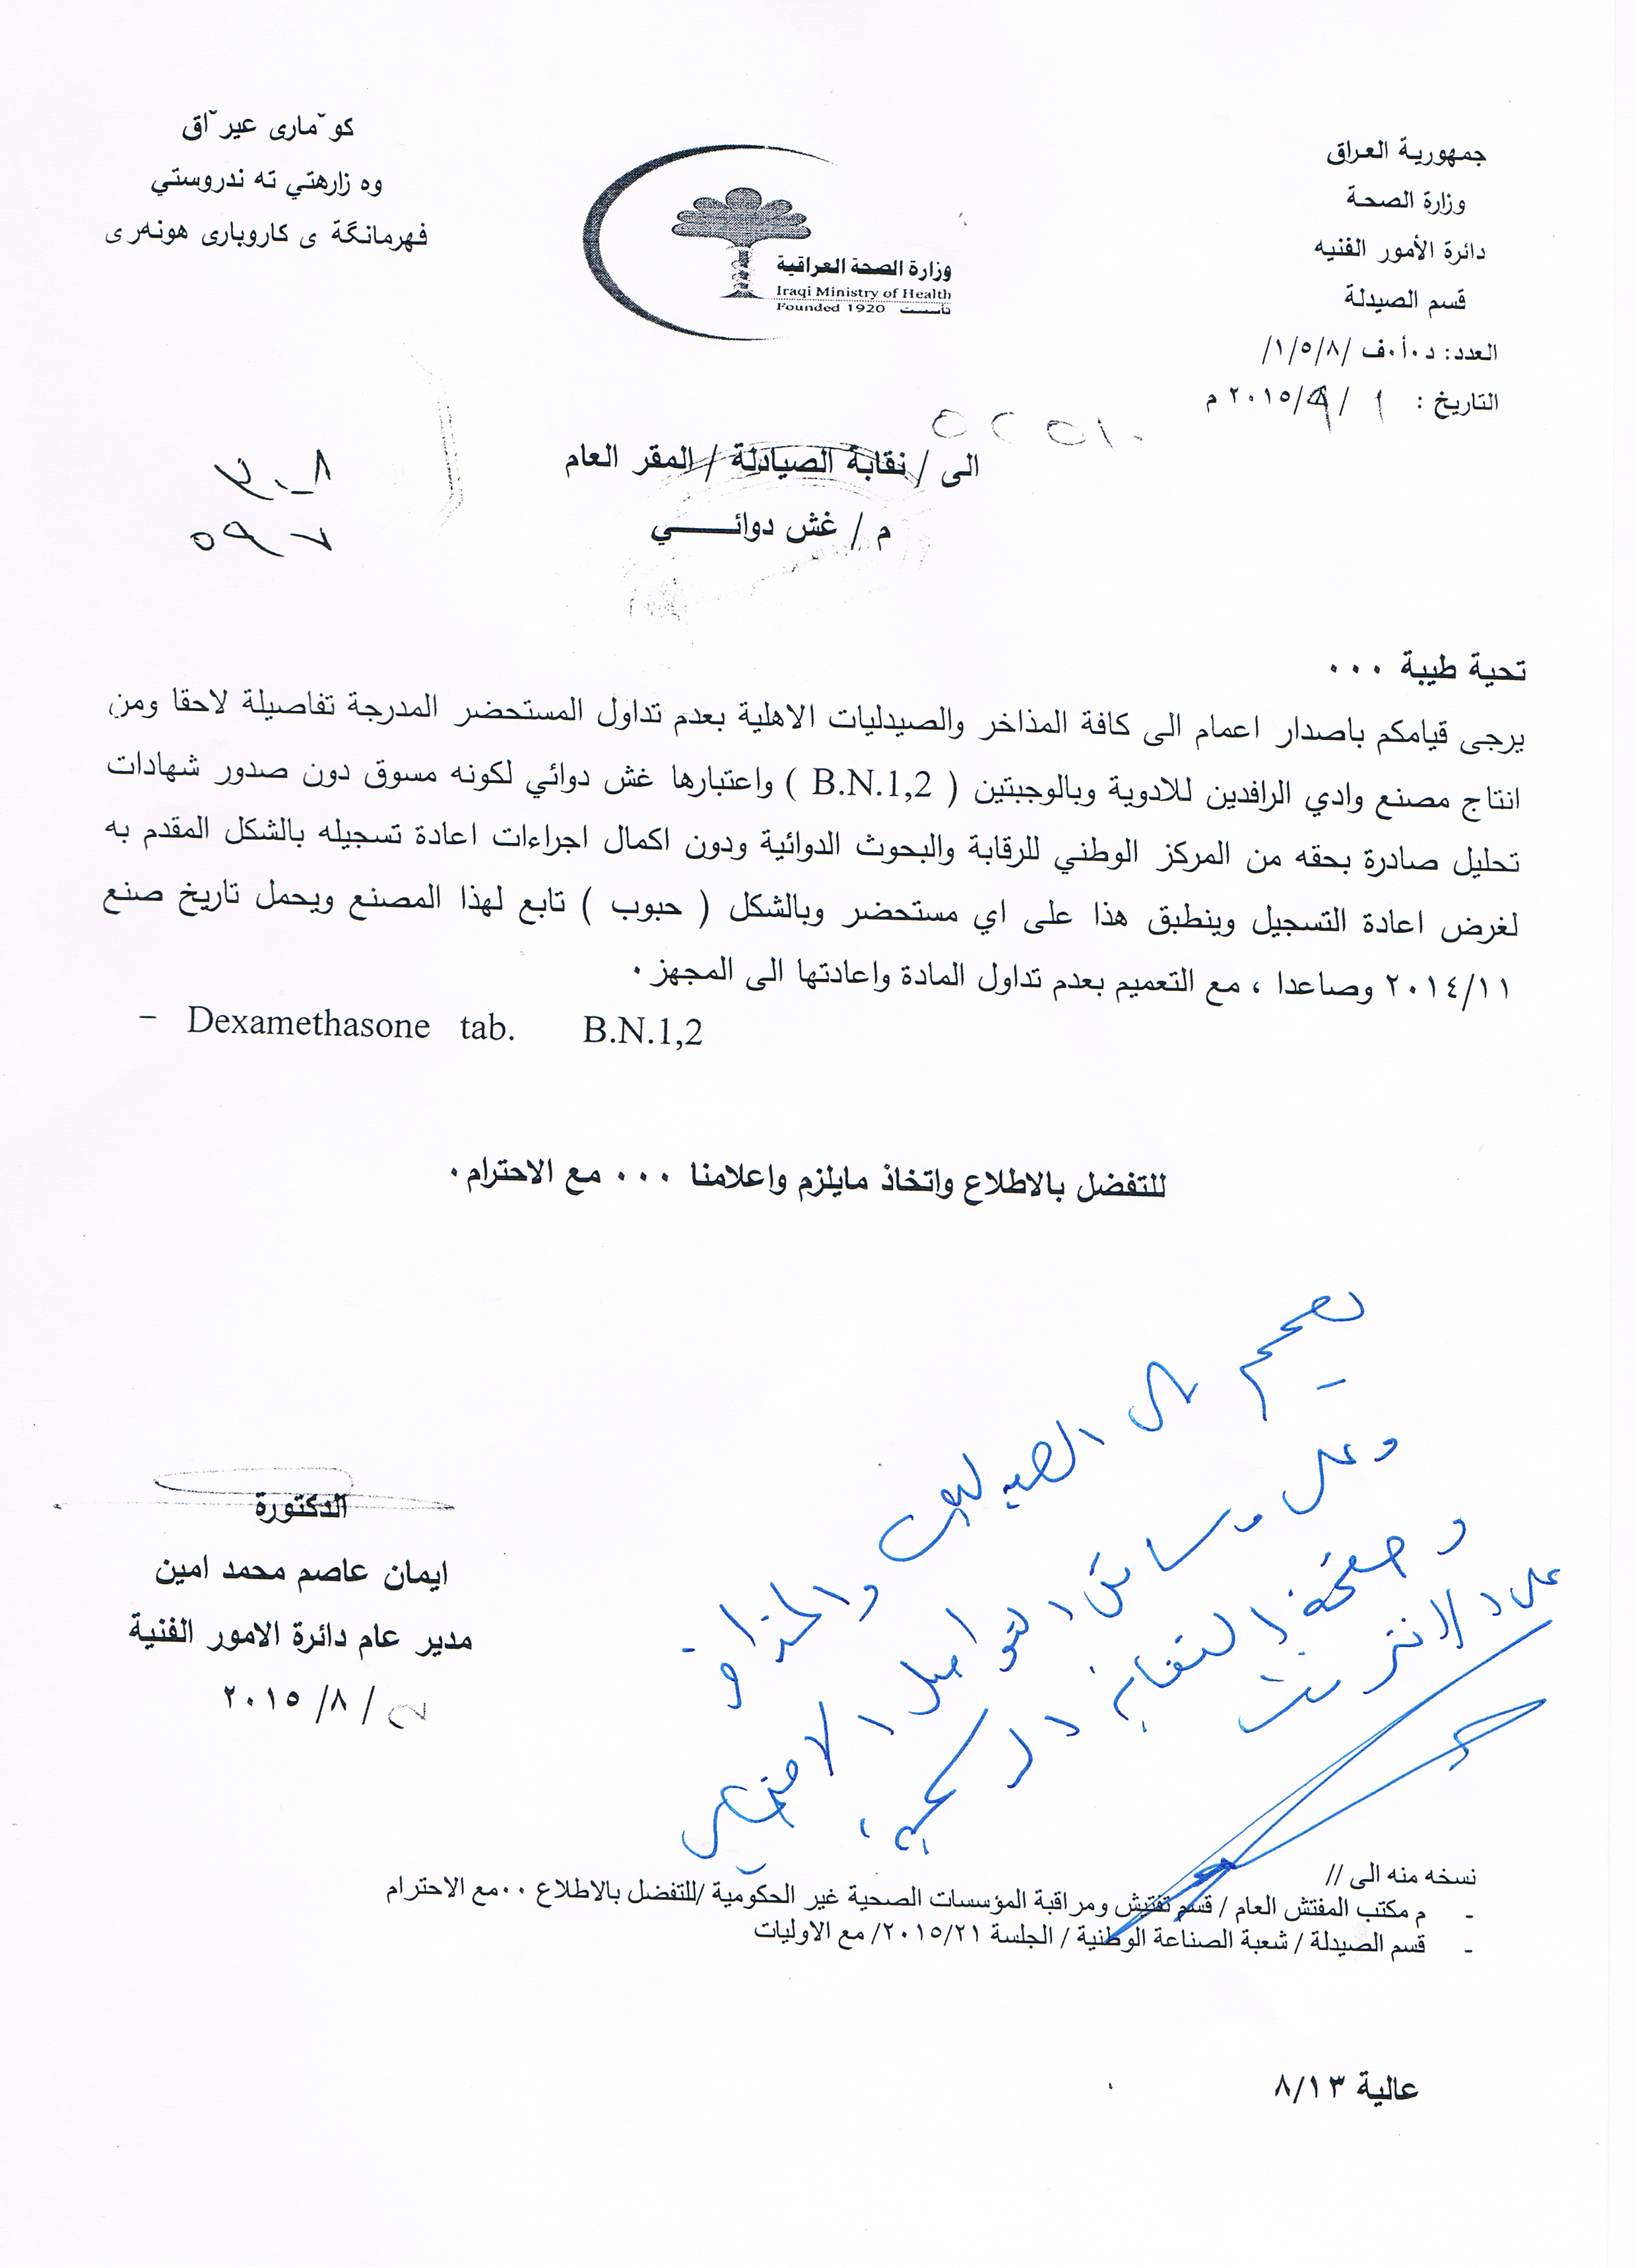 تعميم وزارة الصحة بخصوص غش دوائي نقابة صيادلة العراق